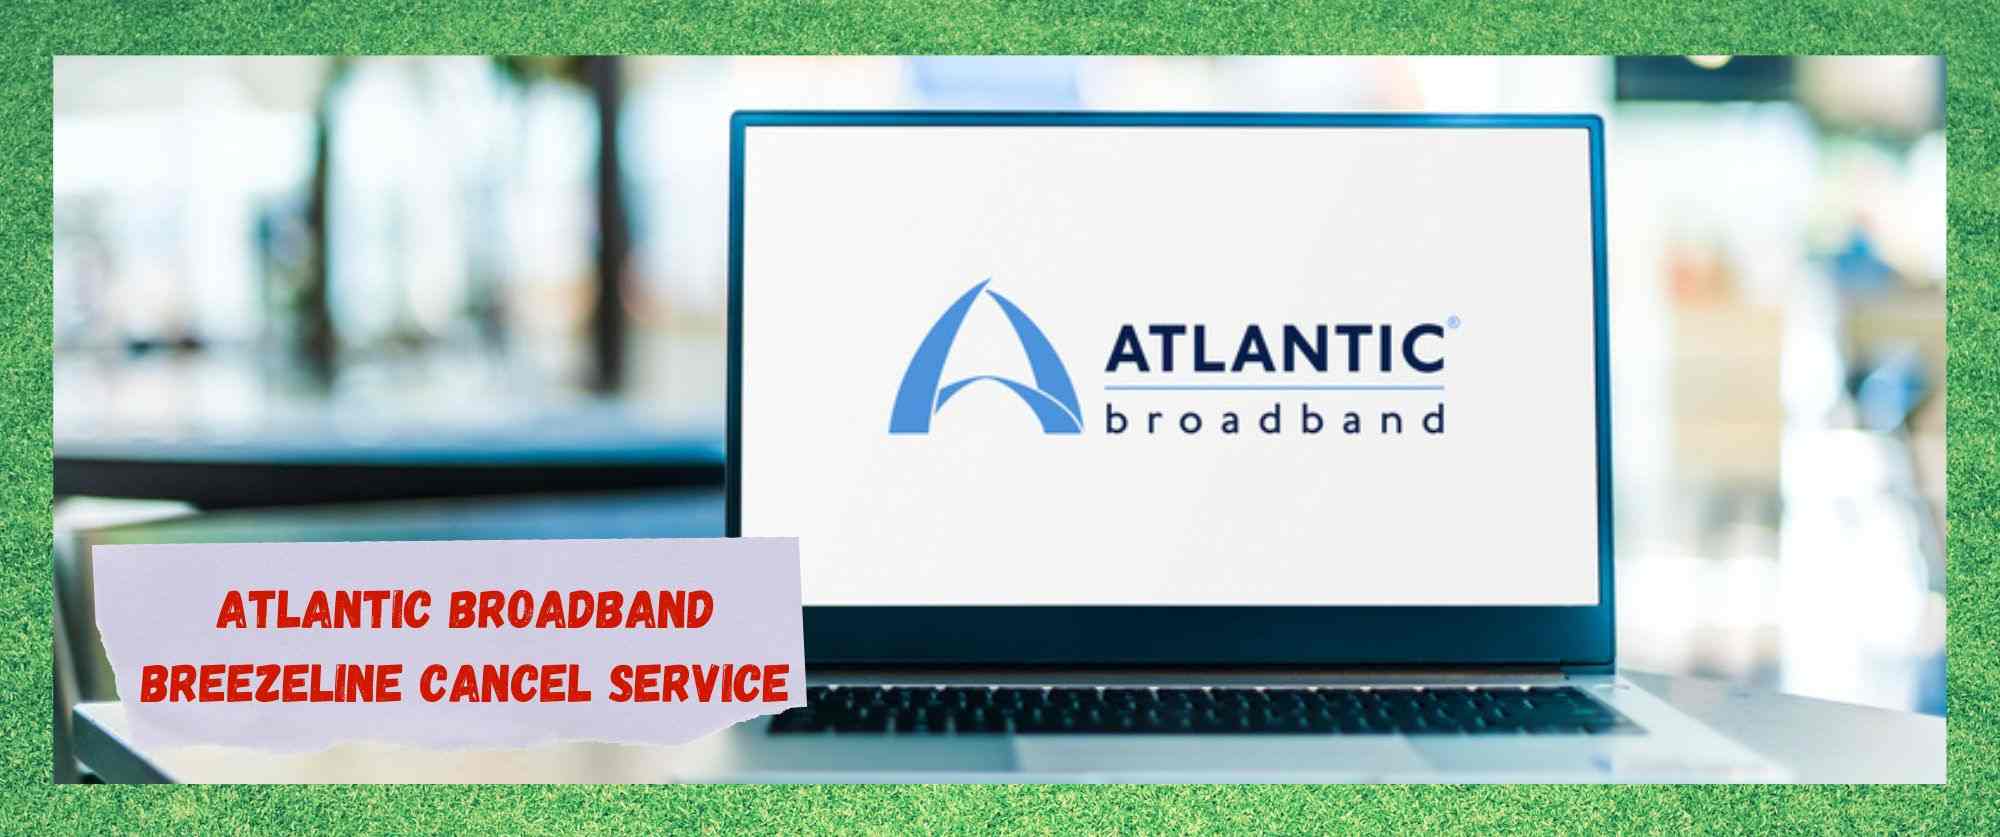 Atlantic Broadband Breezeline Service opzeggen in 8 snelle stappen